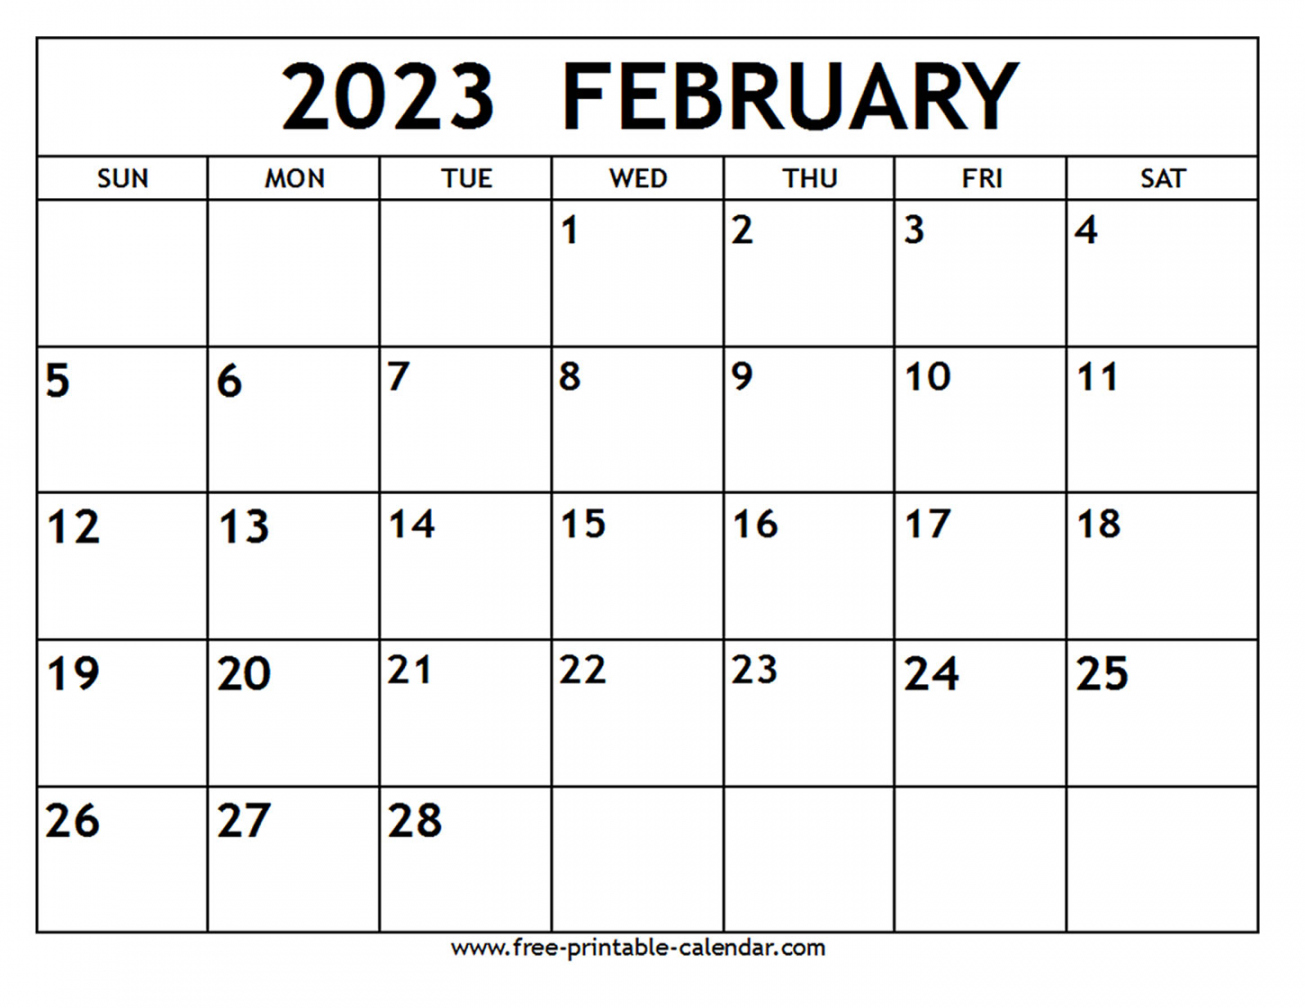 February  Calendar - Free-printable-calendar - February 2023 Calendar Free Printable